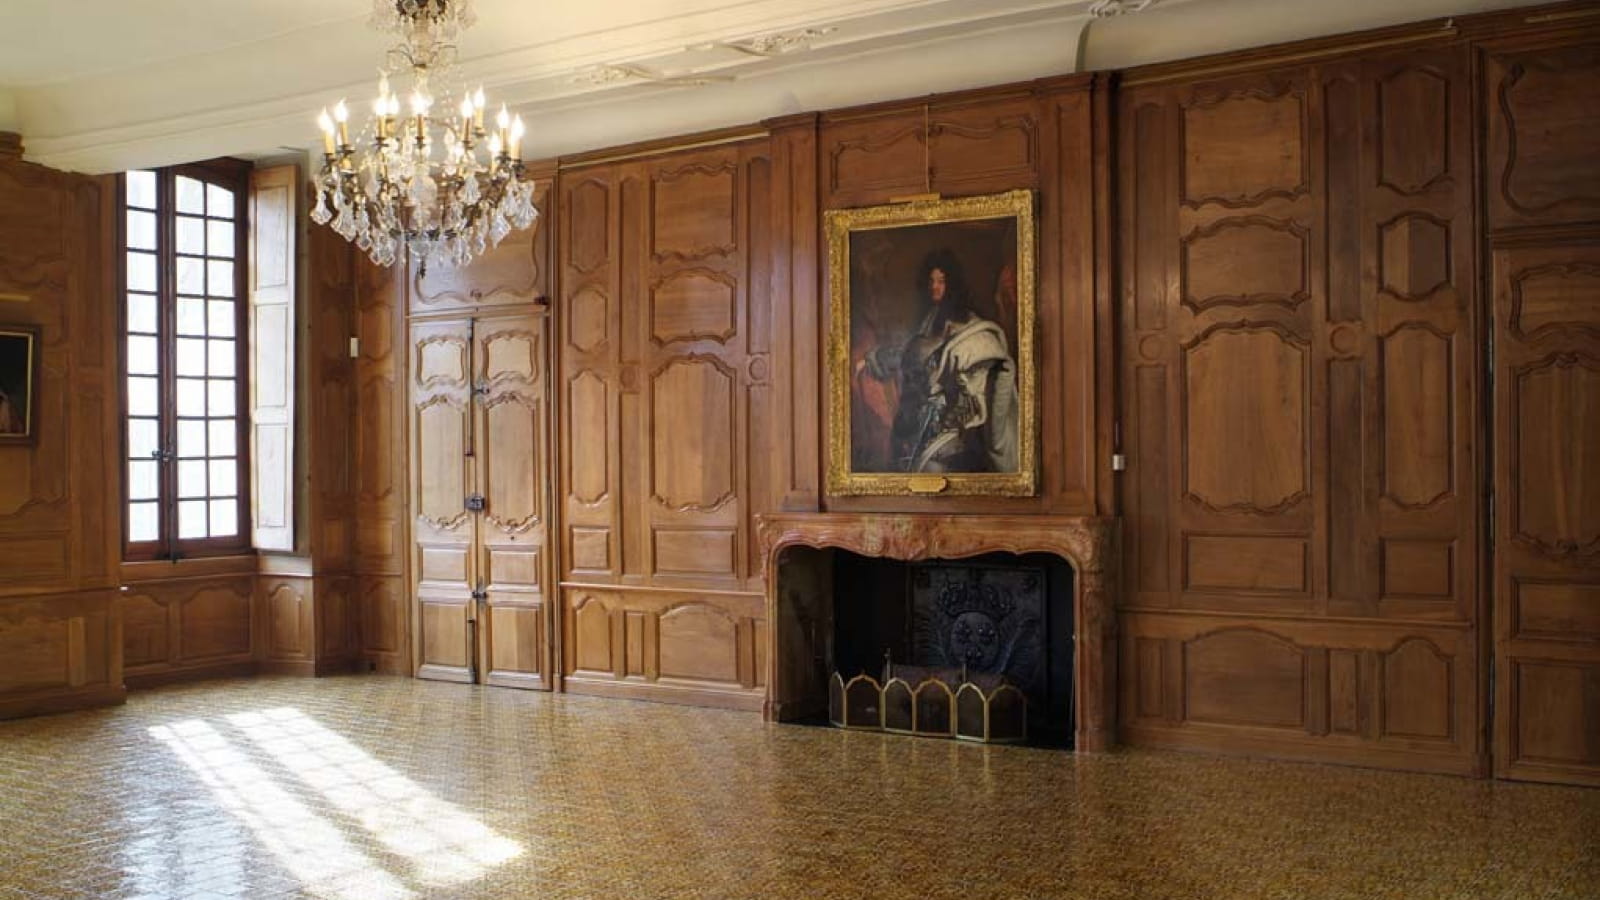 Visite guidée des lieux secrets et découverte des salles historiques du 1ier étage de l'Hôtel Dieu de Beaune